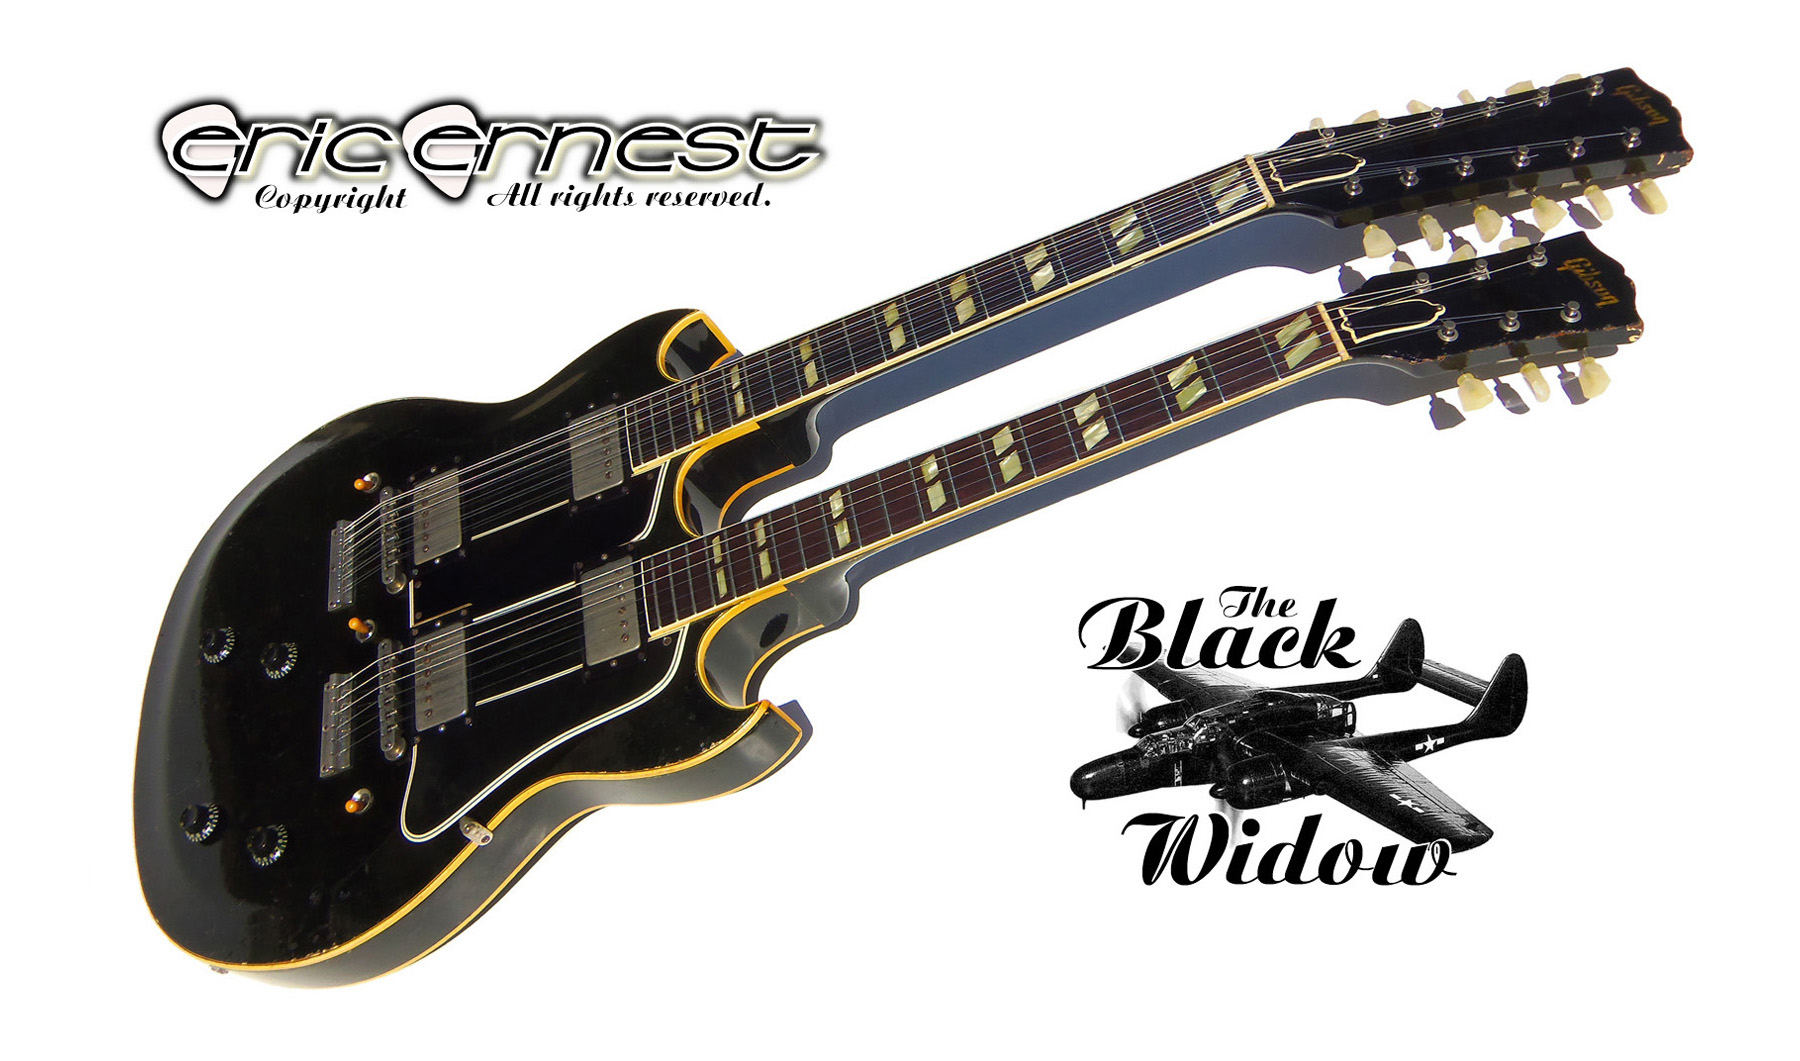 1959 Gibson EDS-1275 double neck guitar